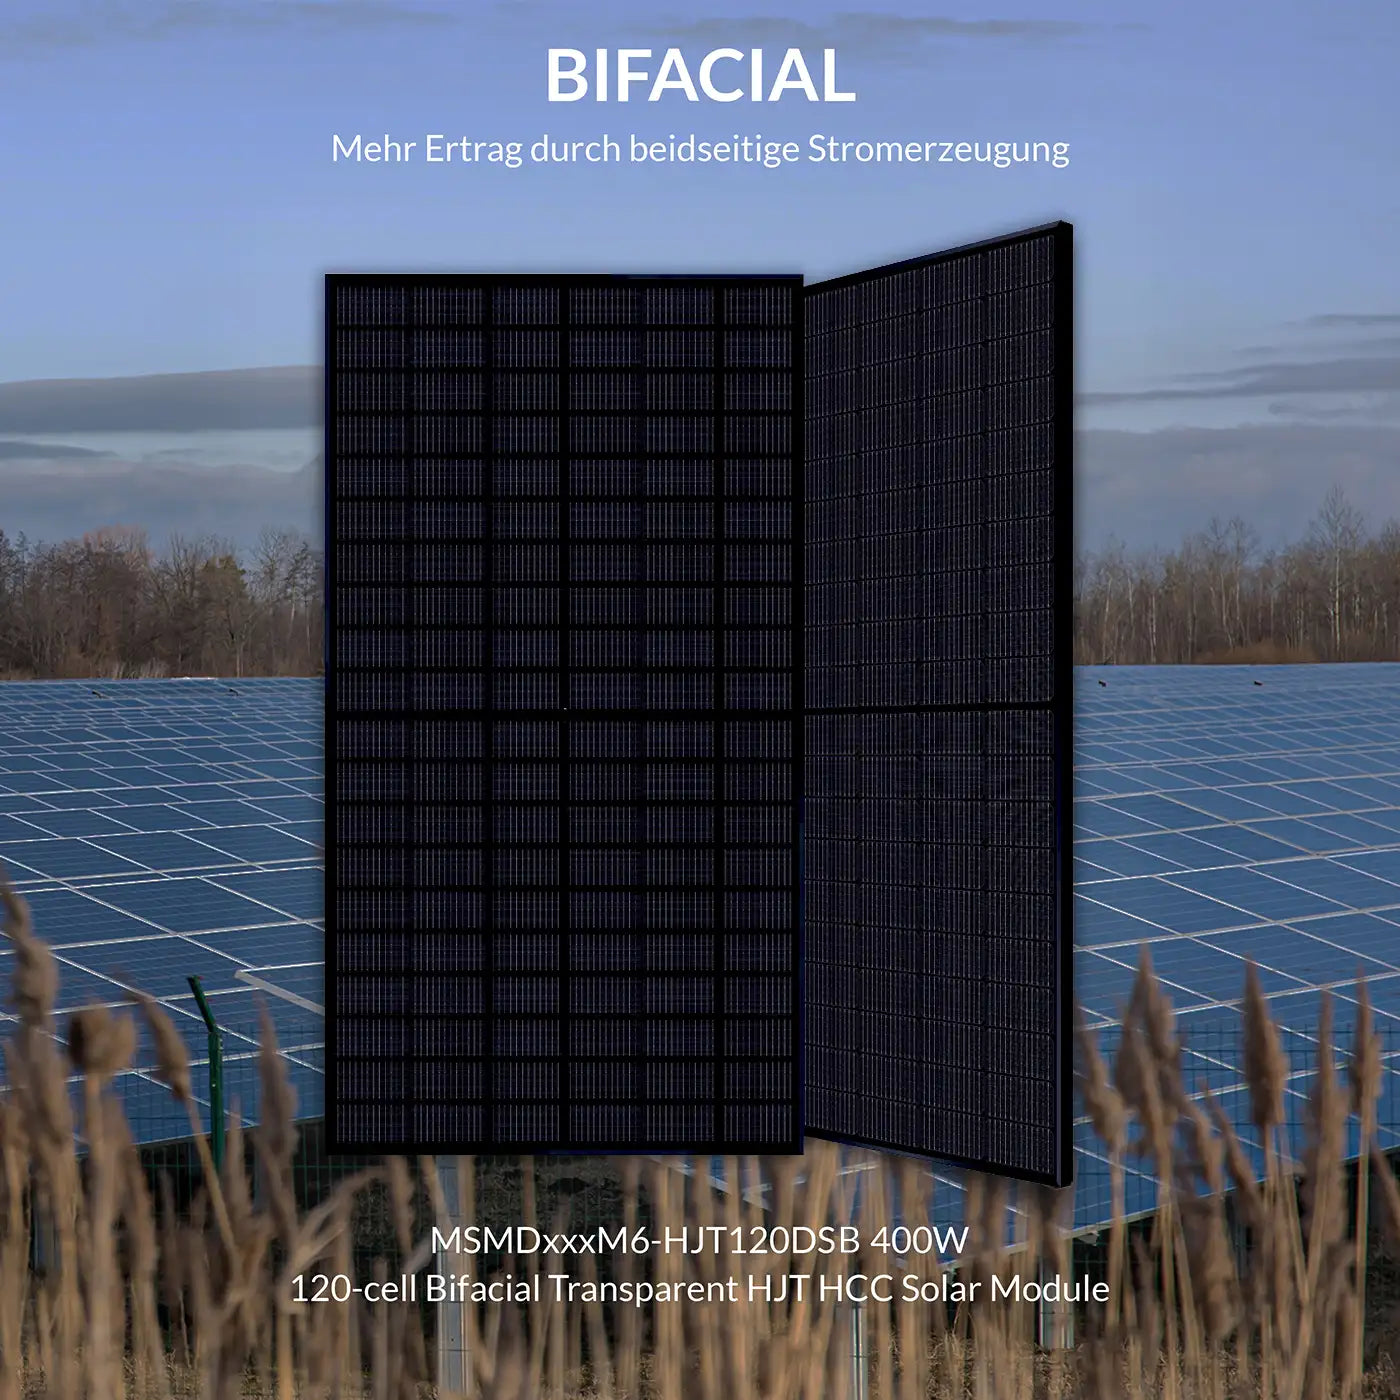 400W MSMDxxxM6-HJT120DSB glass glass bificial solar panel